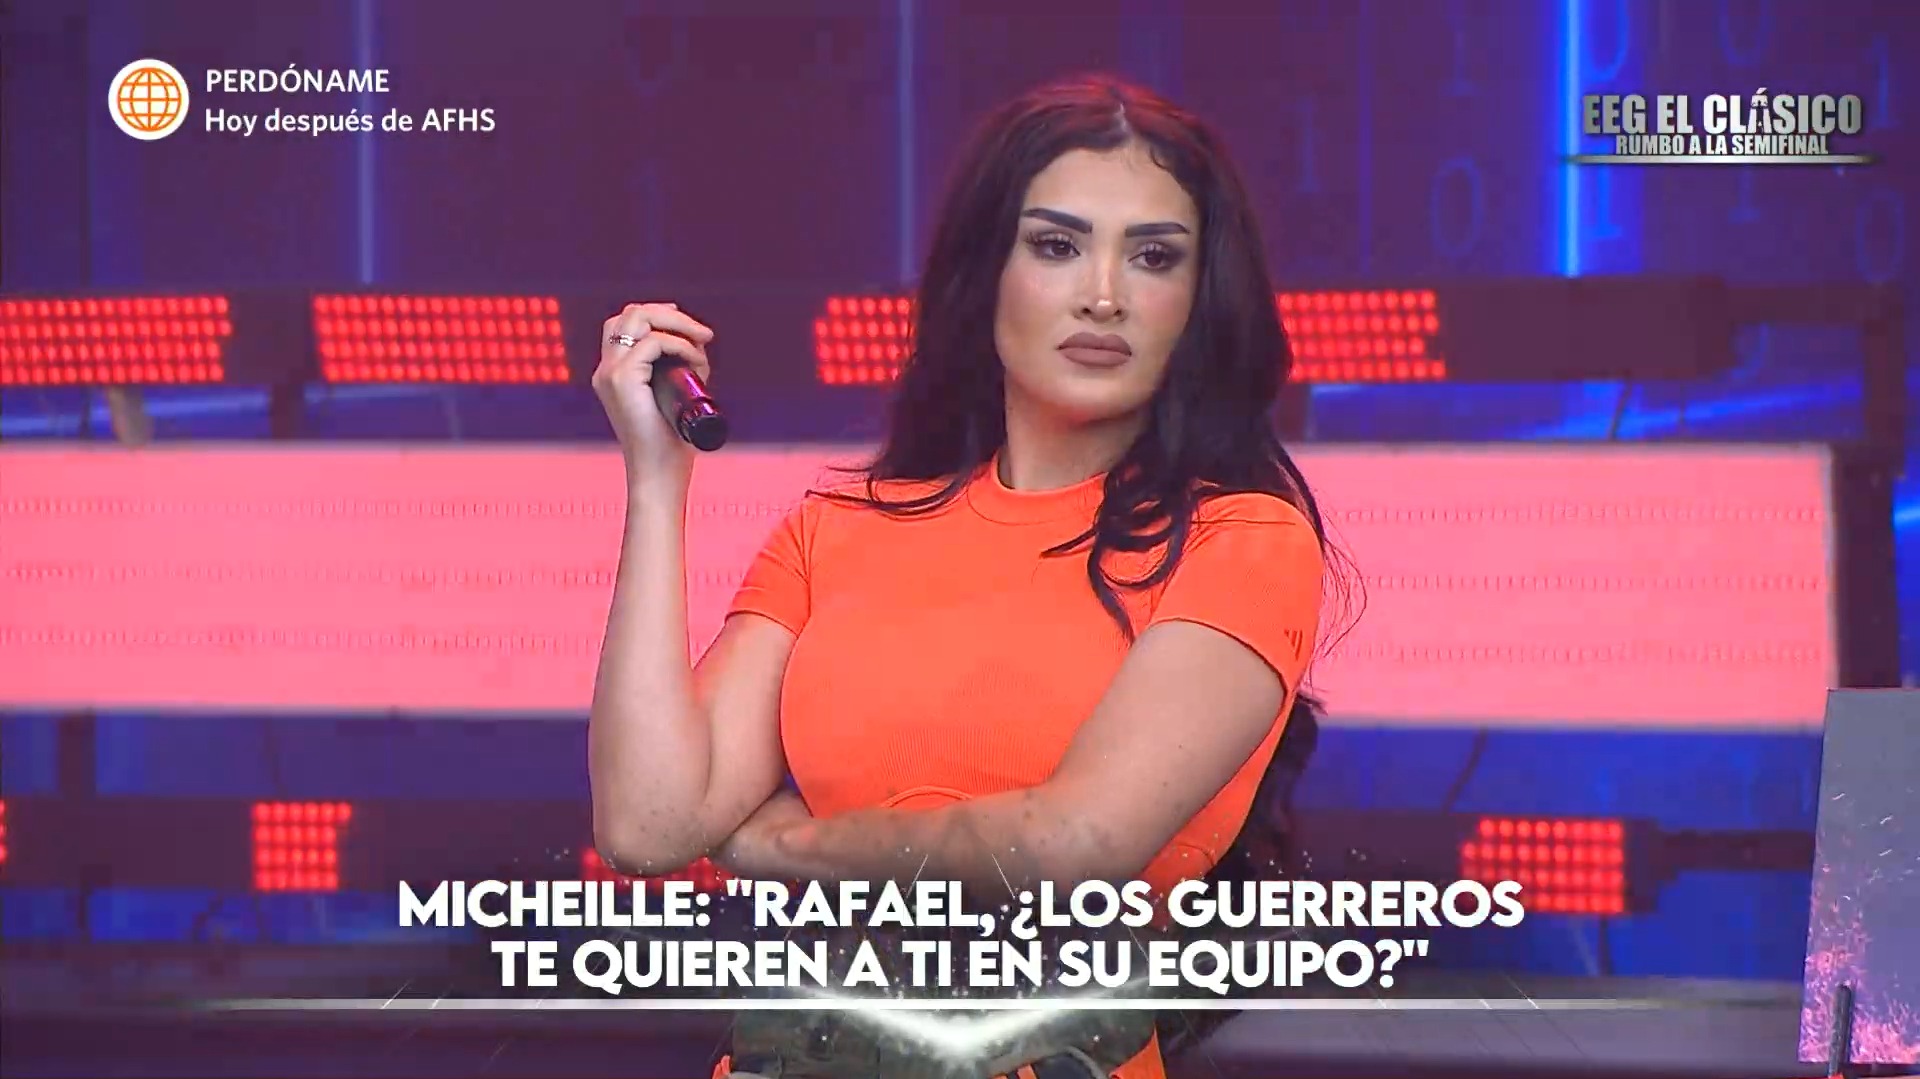 Rafael Cardozo aseguró que ningún equipo quiere a Michelle Soifer. Fuente: AméricaTV